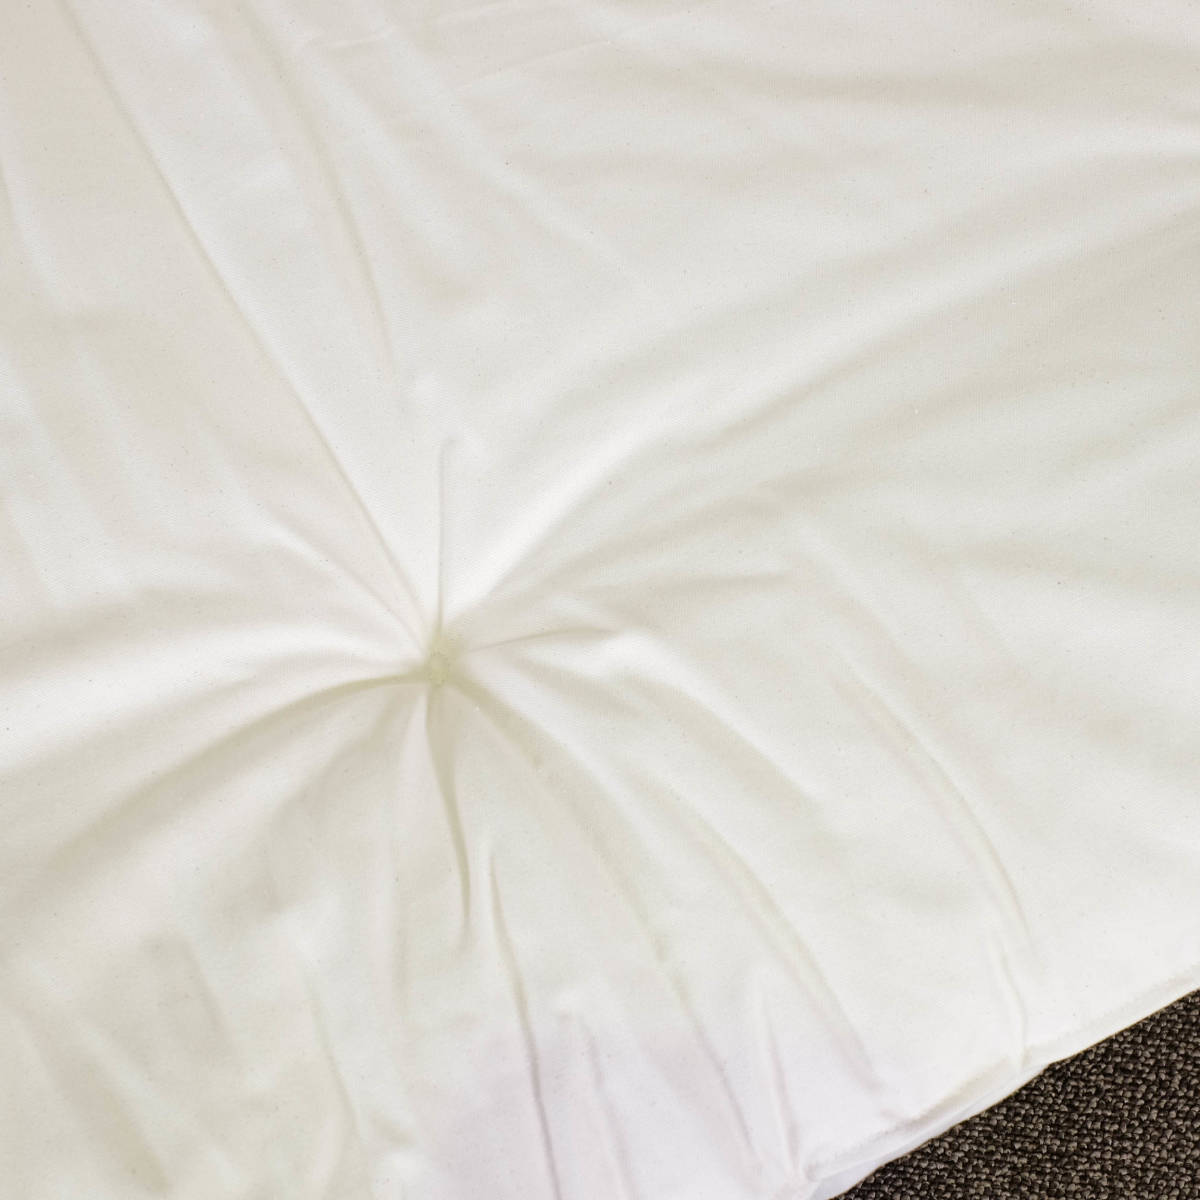  новый товар DINO диван-кровать матрац одиночный товар полуторный made in Kyoto Япония низкая упругость уретан три слой структура futon хлопок хлопок коврик диван-кровать для 